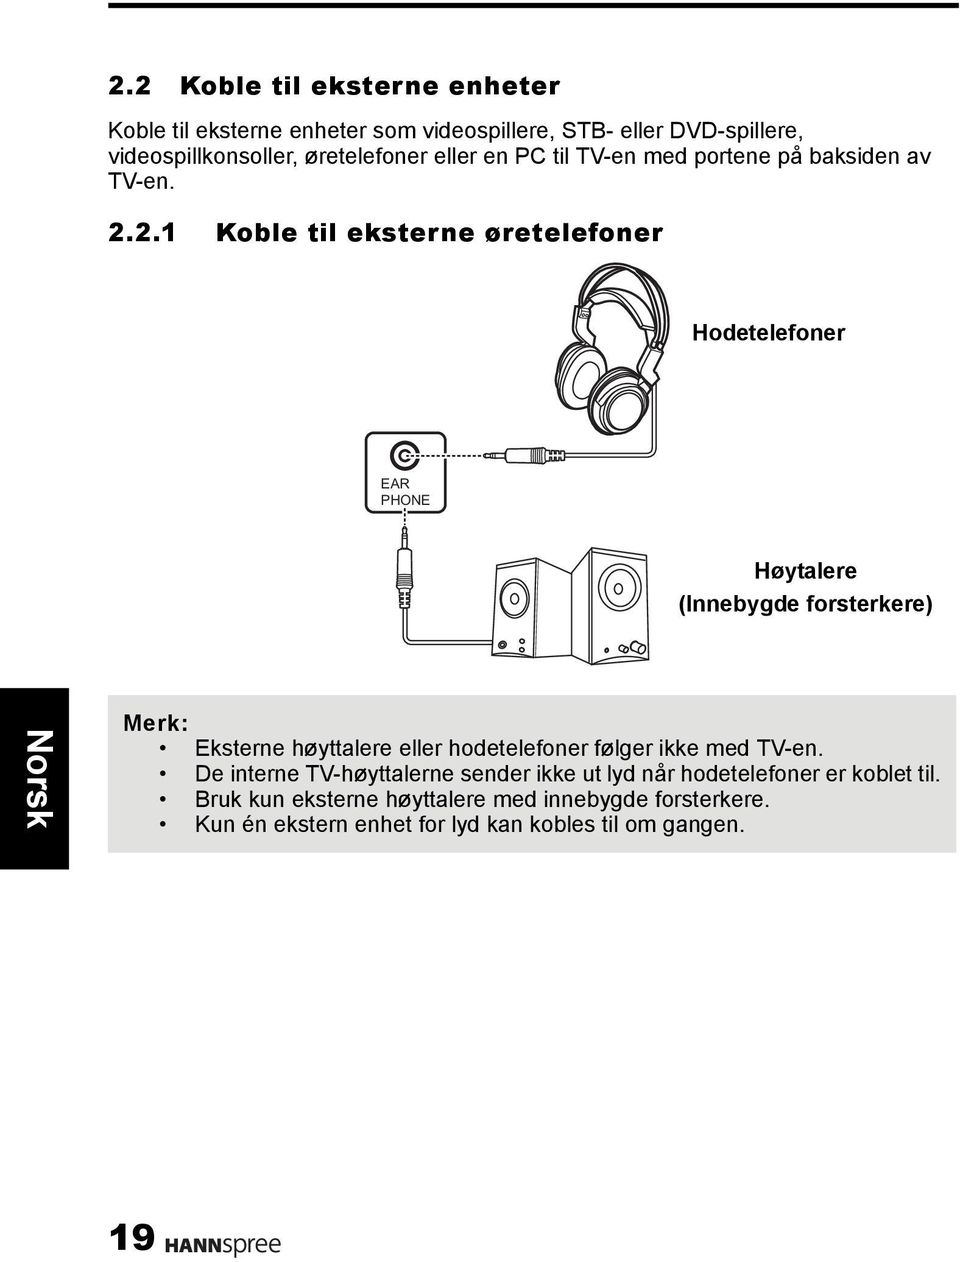 2.1 Koble til eksterne øretelefoner Hodetelefoner EAR PHONE Høytalere (Innebygde forsterkere) Merk: Eksterne høyttalere eller